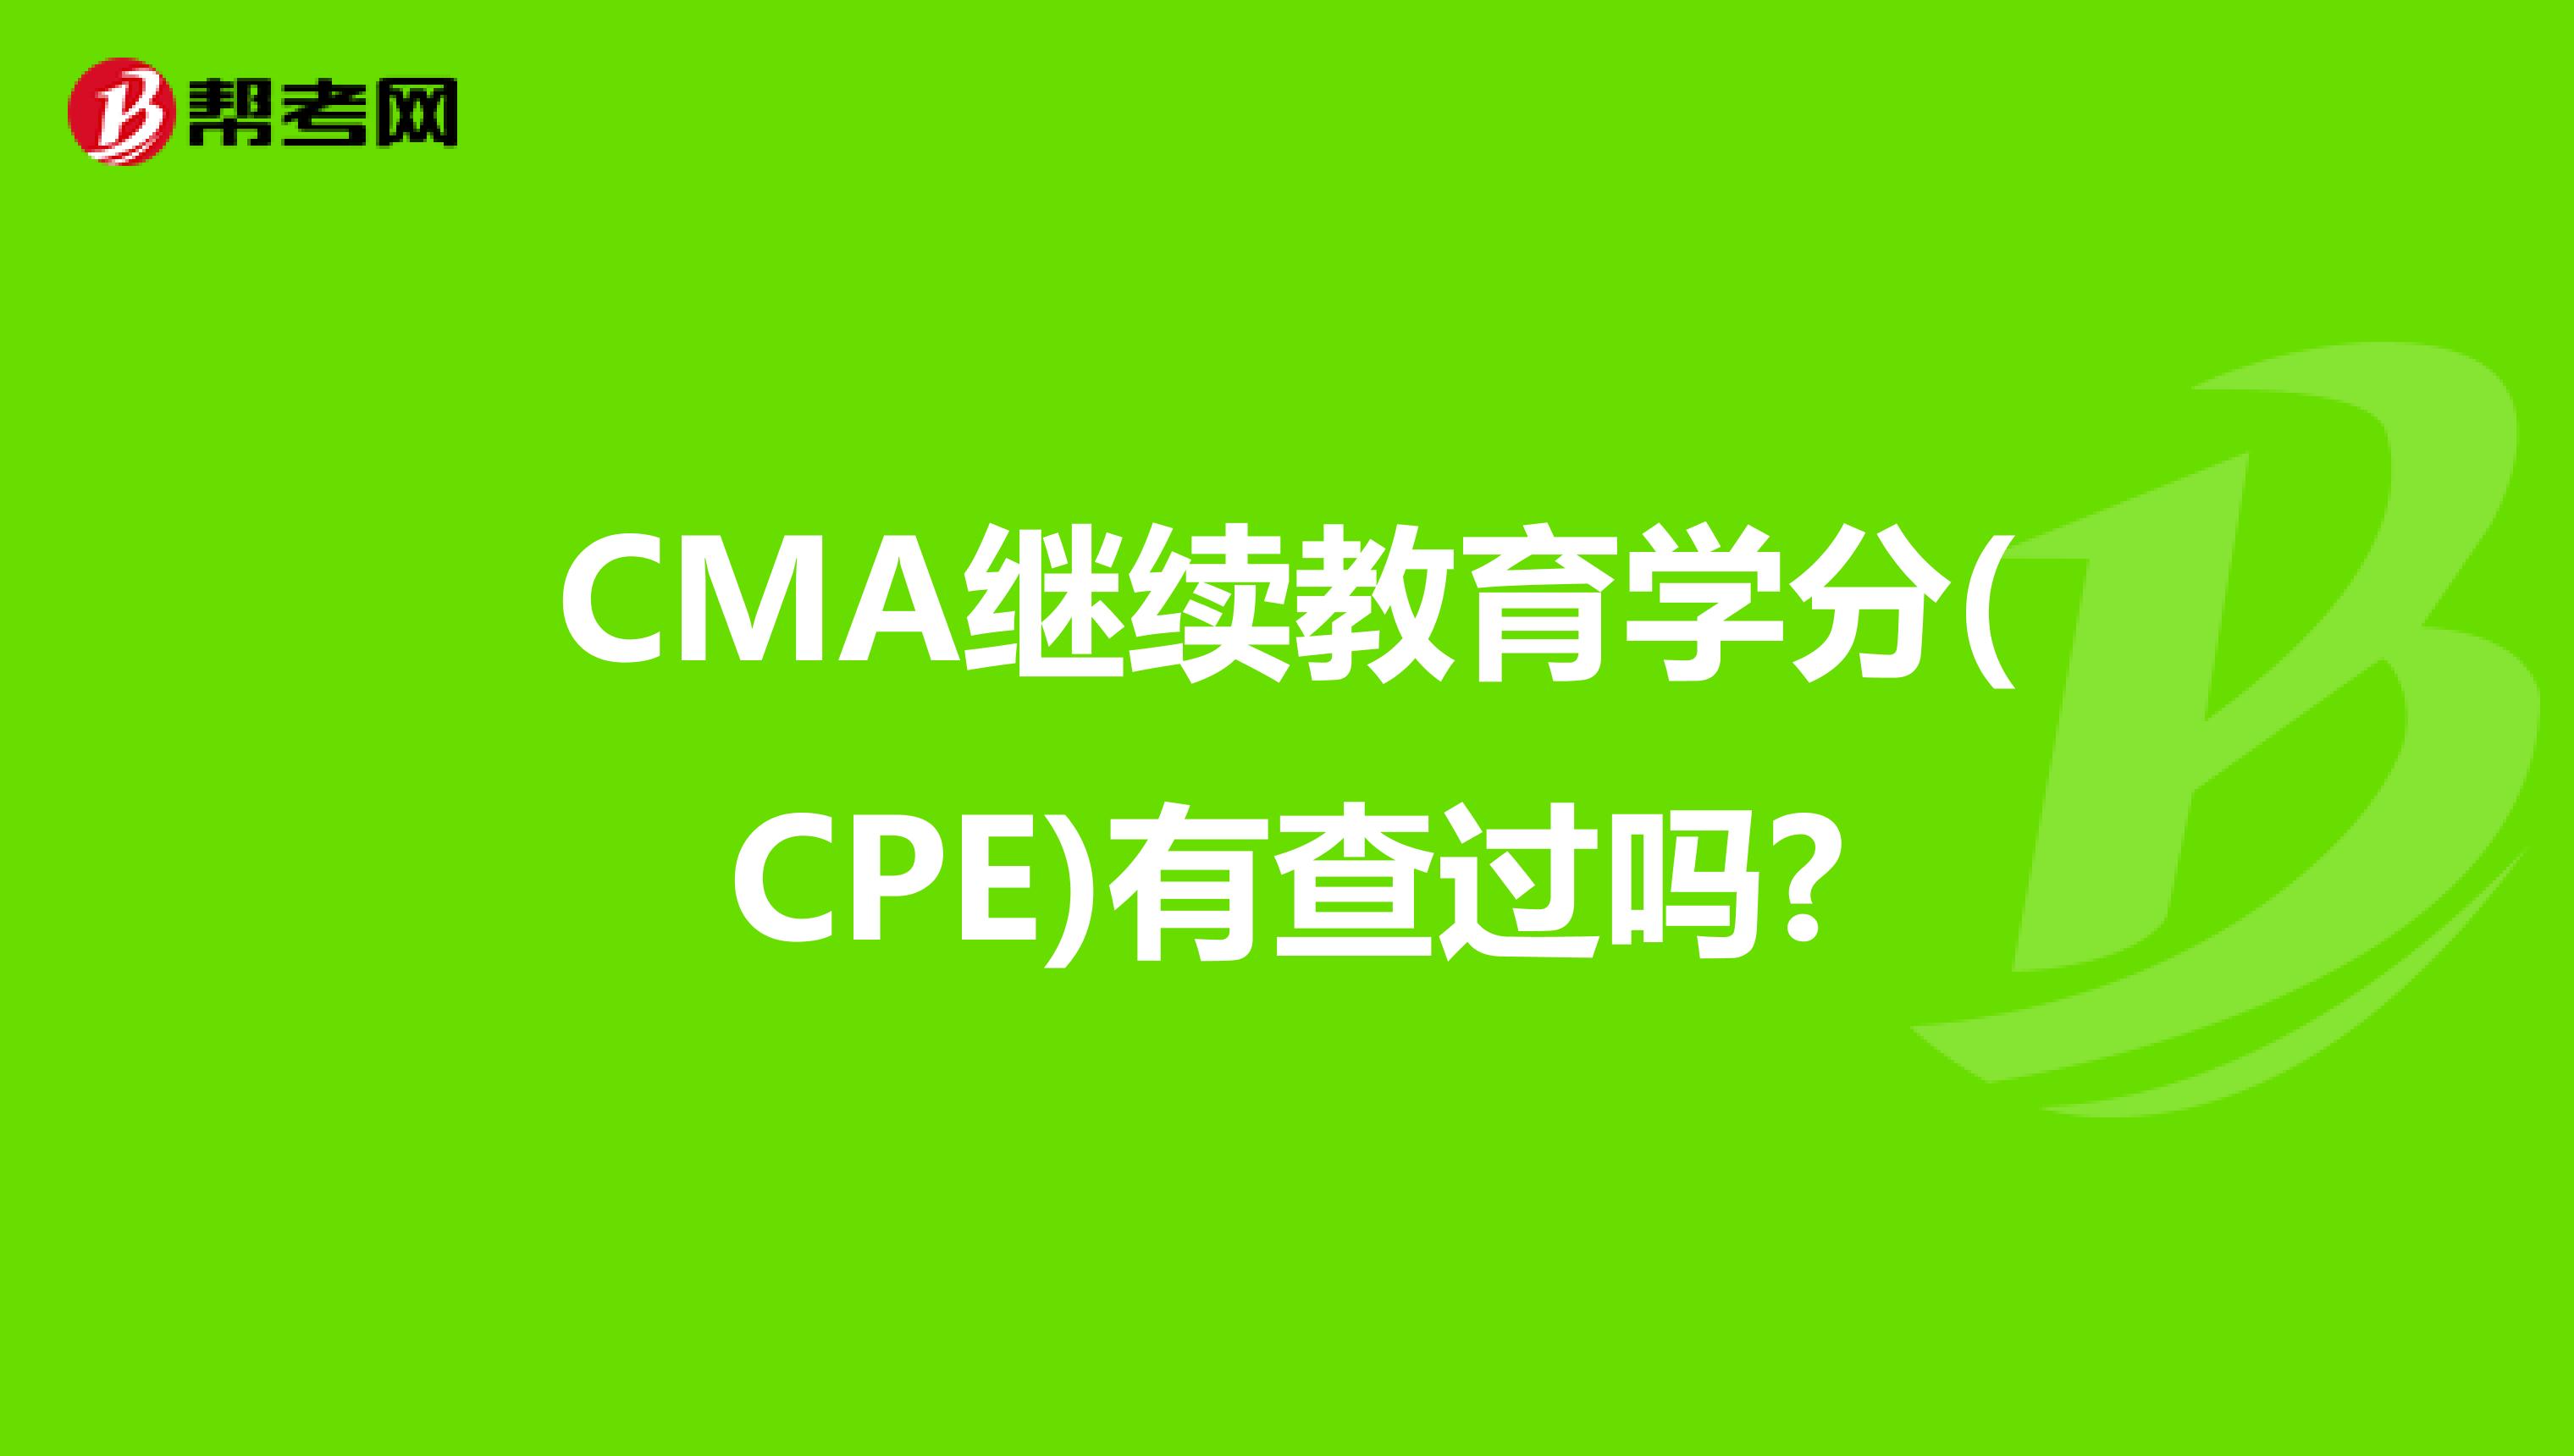 CMA继续教育学分(CPE)有查过吗?